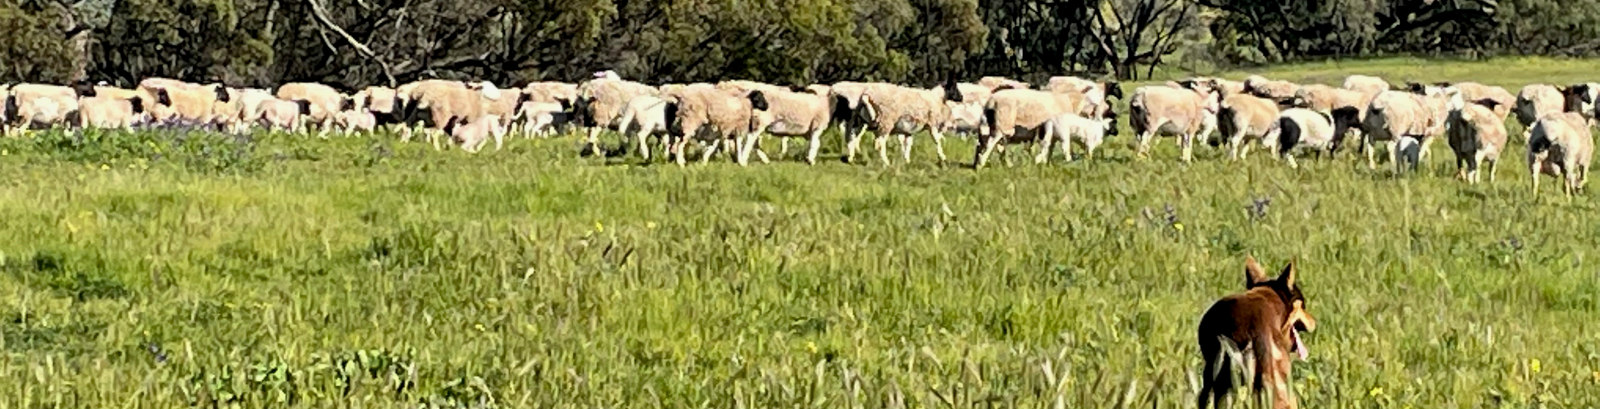 Baillee Farm sheep